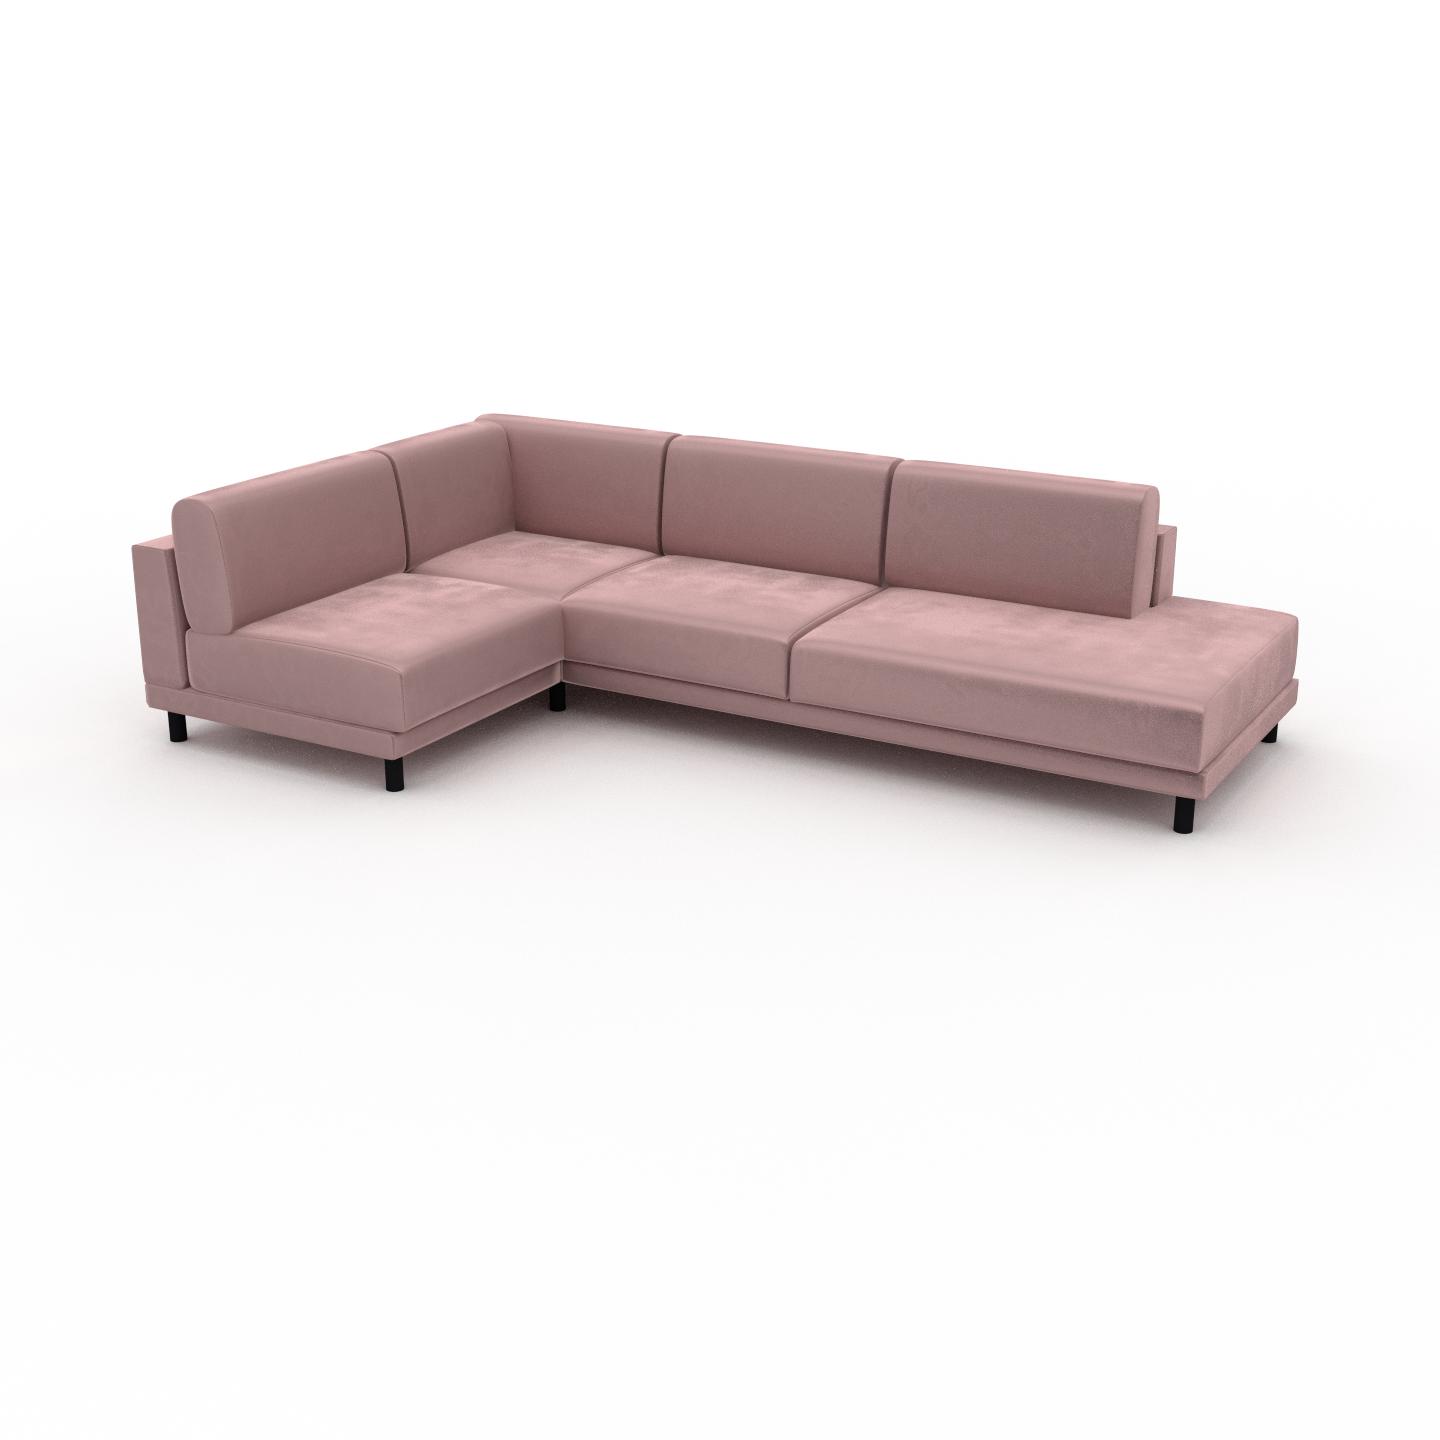 MYCS Sofa Samt Bonbonrosa - Moderne Designer-Couch: Hochwertige Qualität, einzigartiges Design - 294 x 75 x 174 cm, Komplett anpassbar